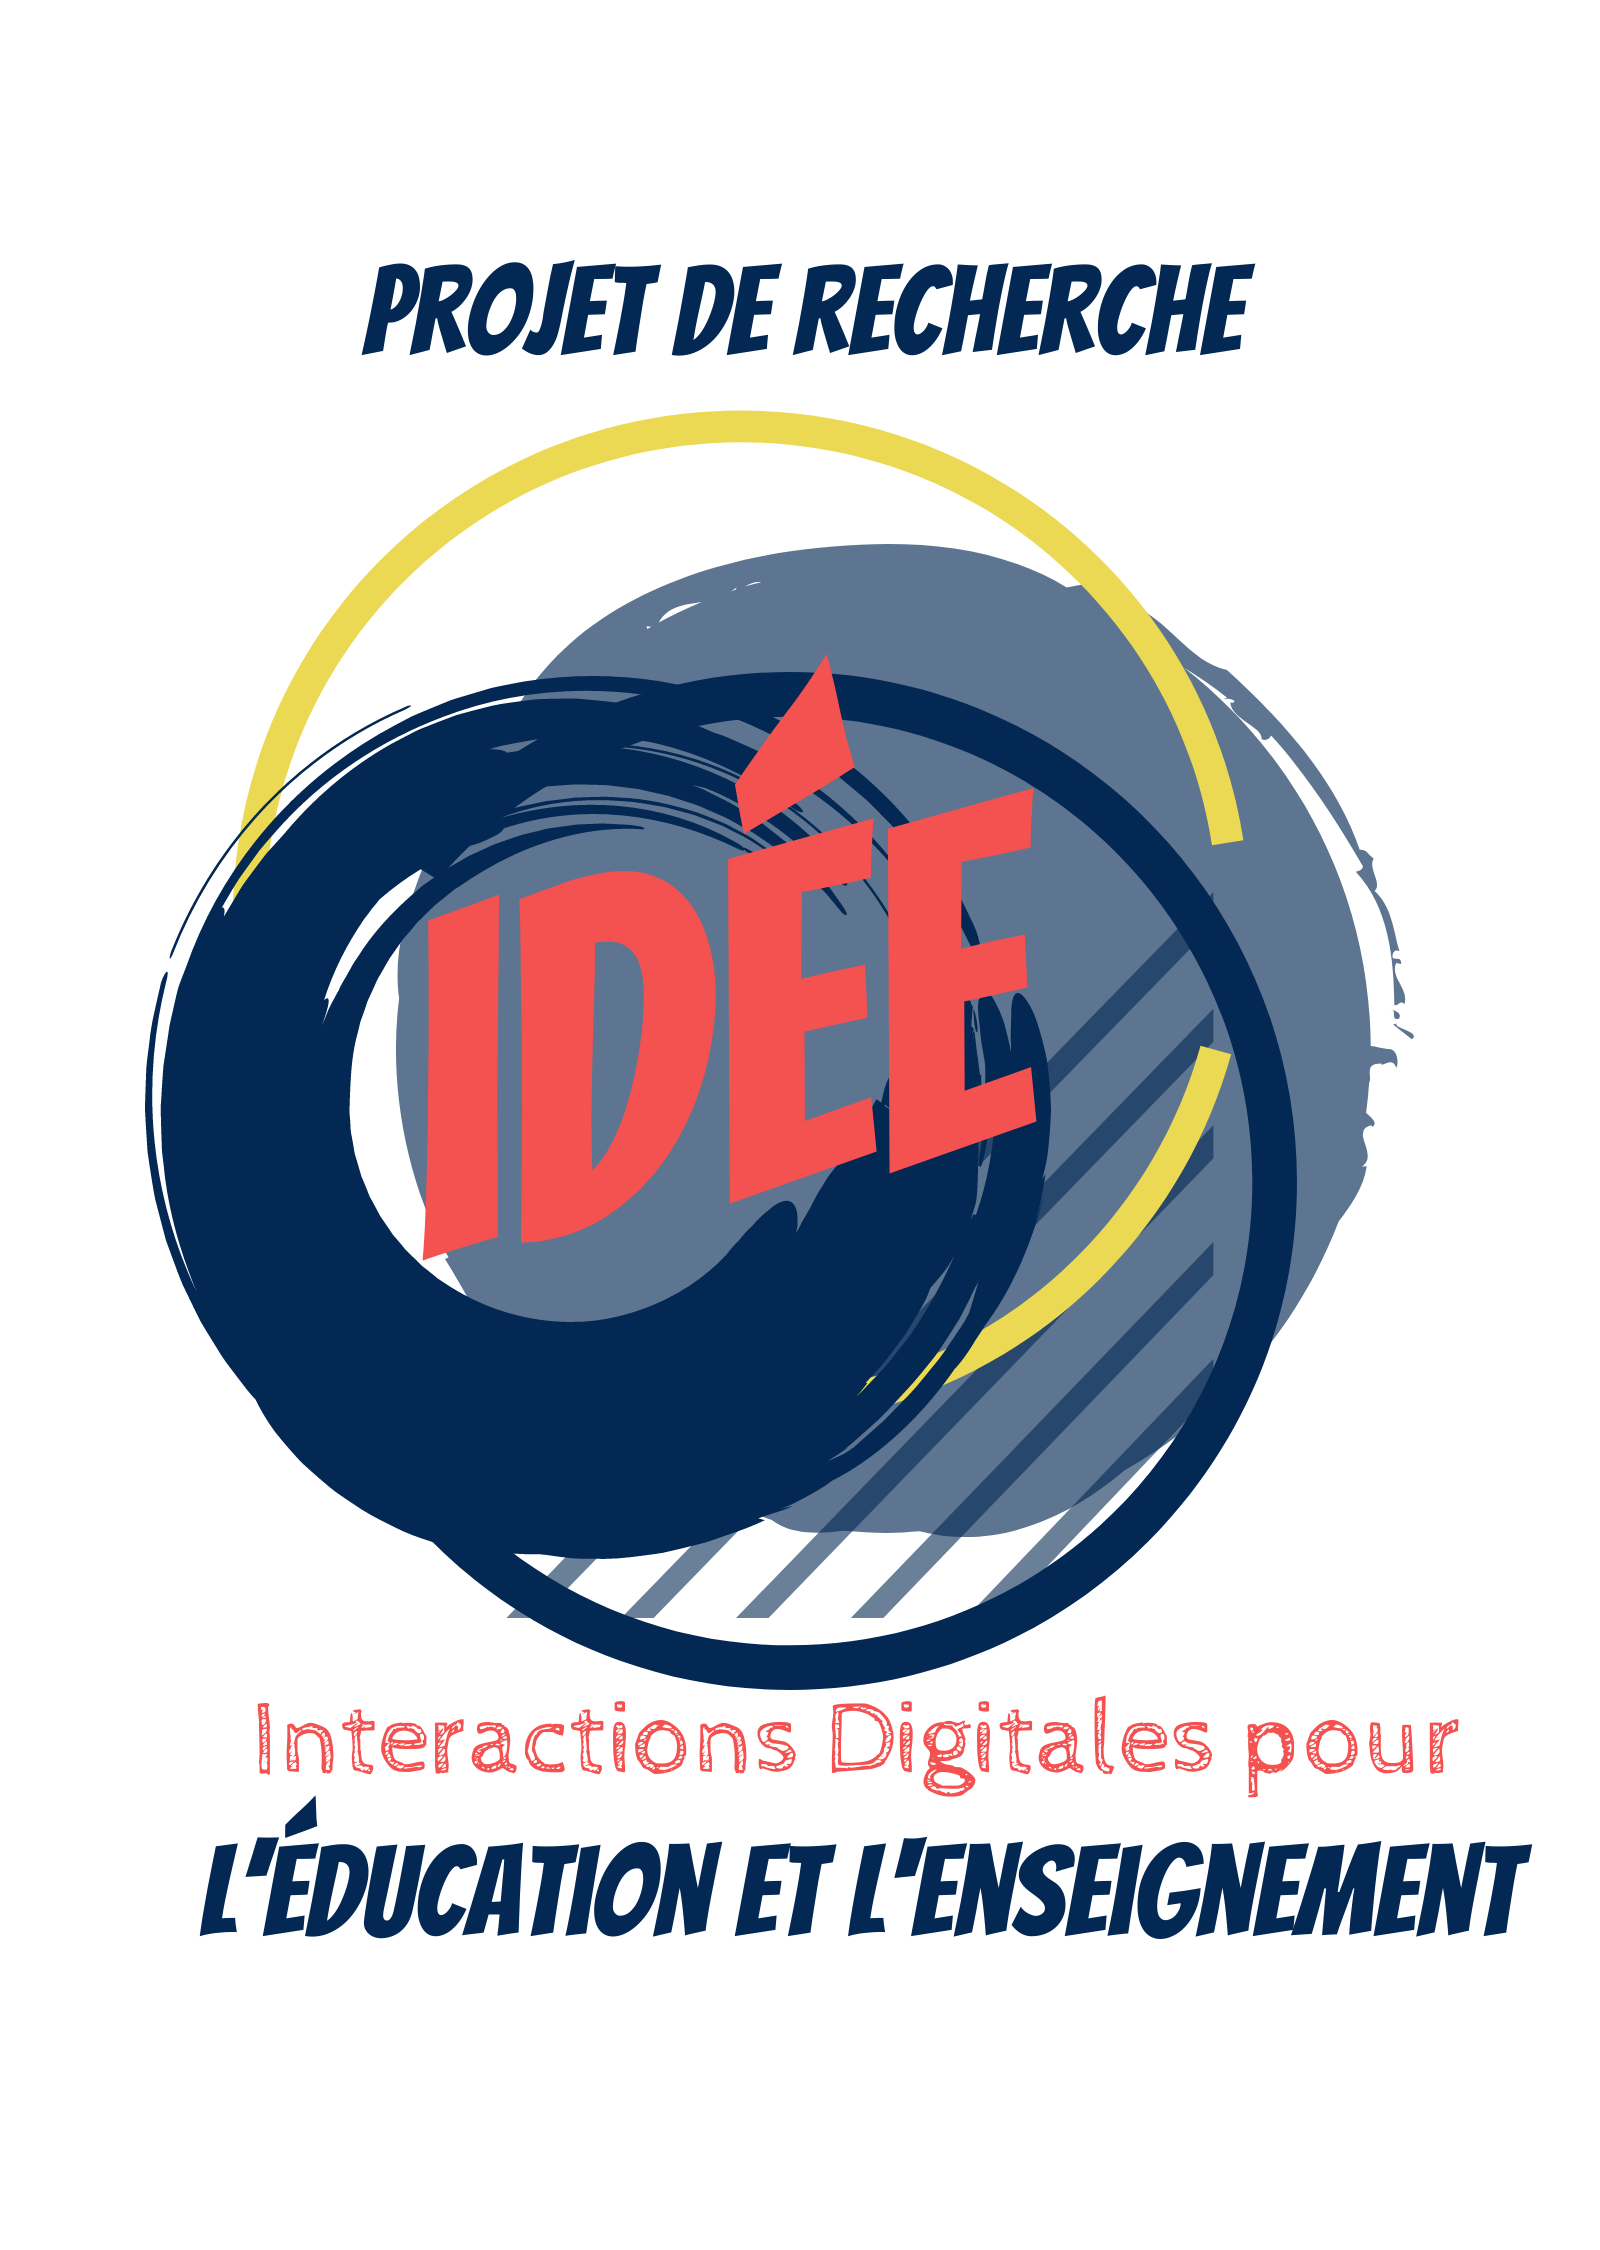 Logo du projet Idée, interactions digitales pour l'éducation et l'enseignement